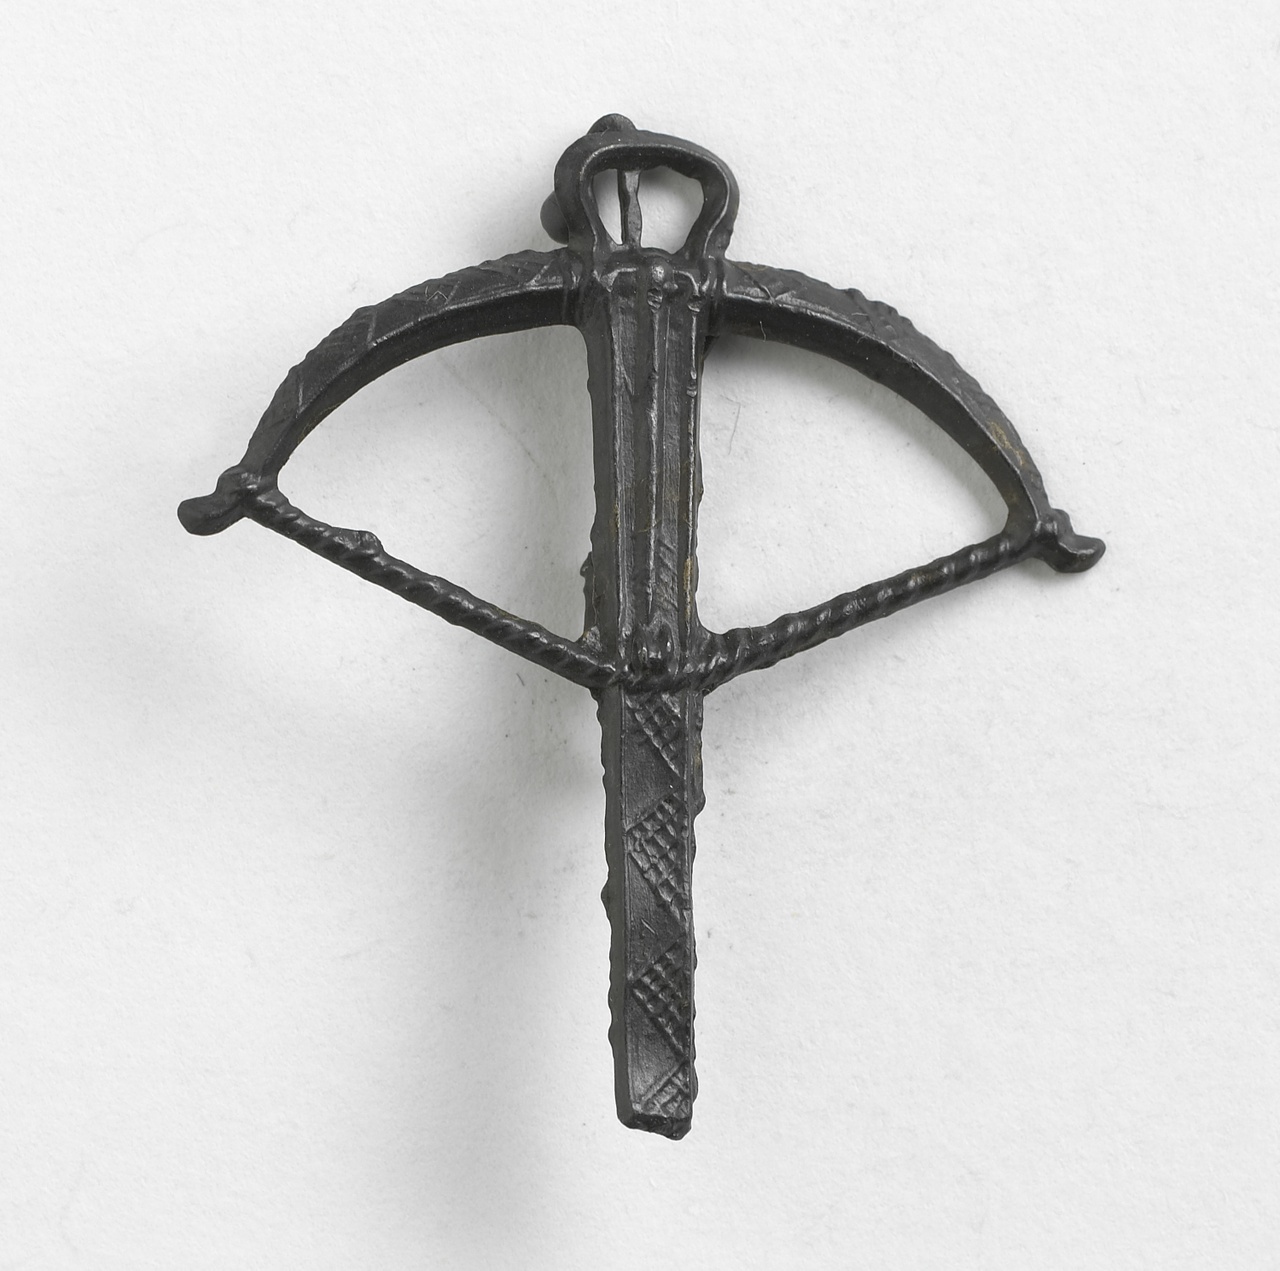 Broche in de vorm van een kruisboog met opgelegde pijl, vindplaats Nieuwlande